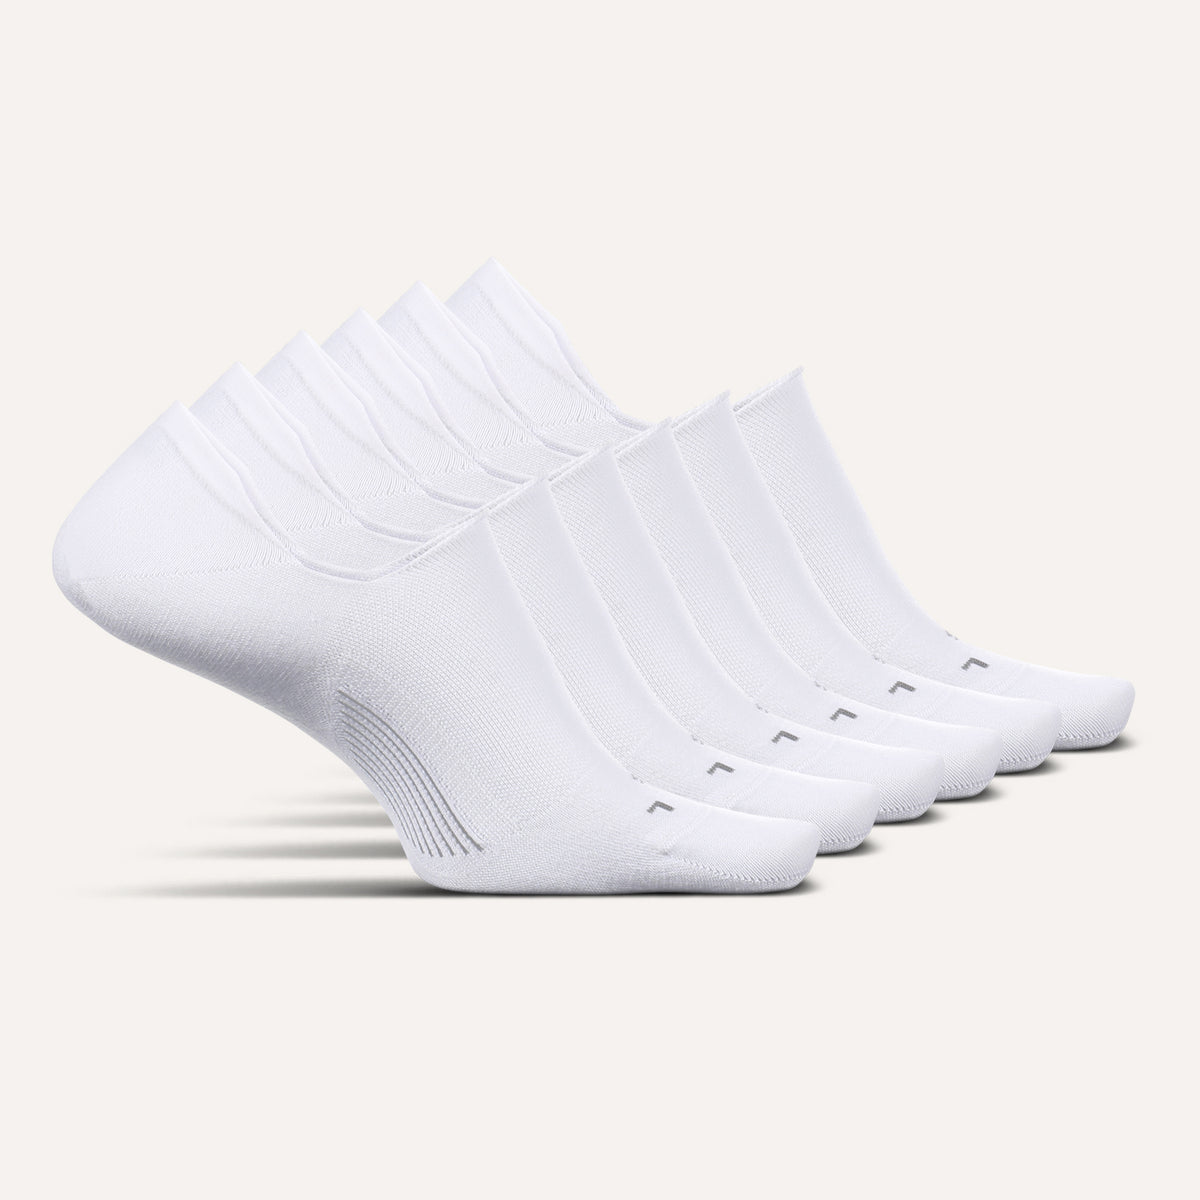 Men's Ultra Light No Show Socks 6 Pack – Feetures